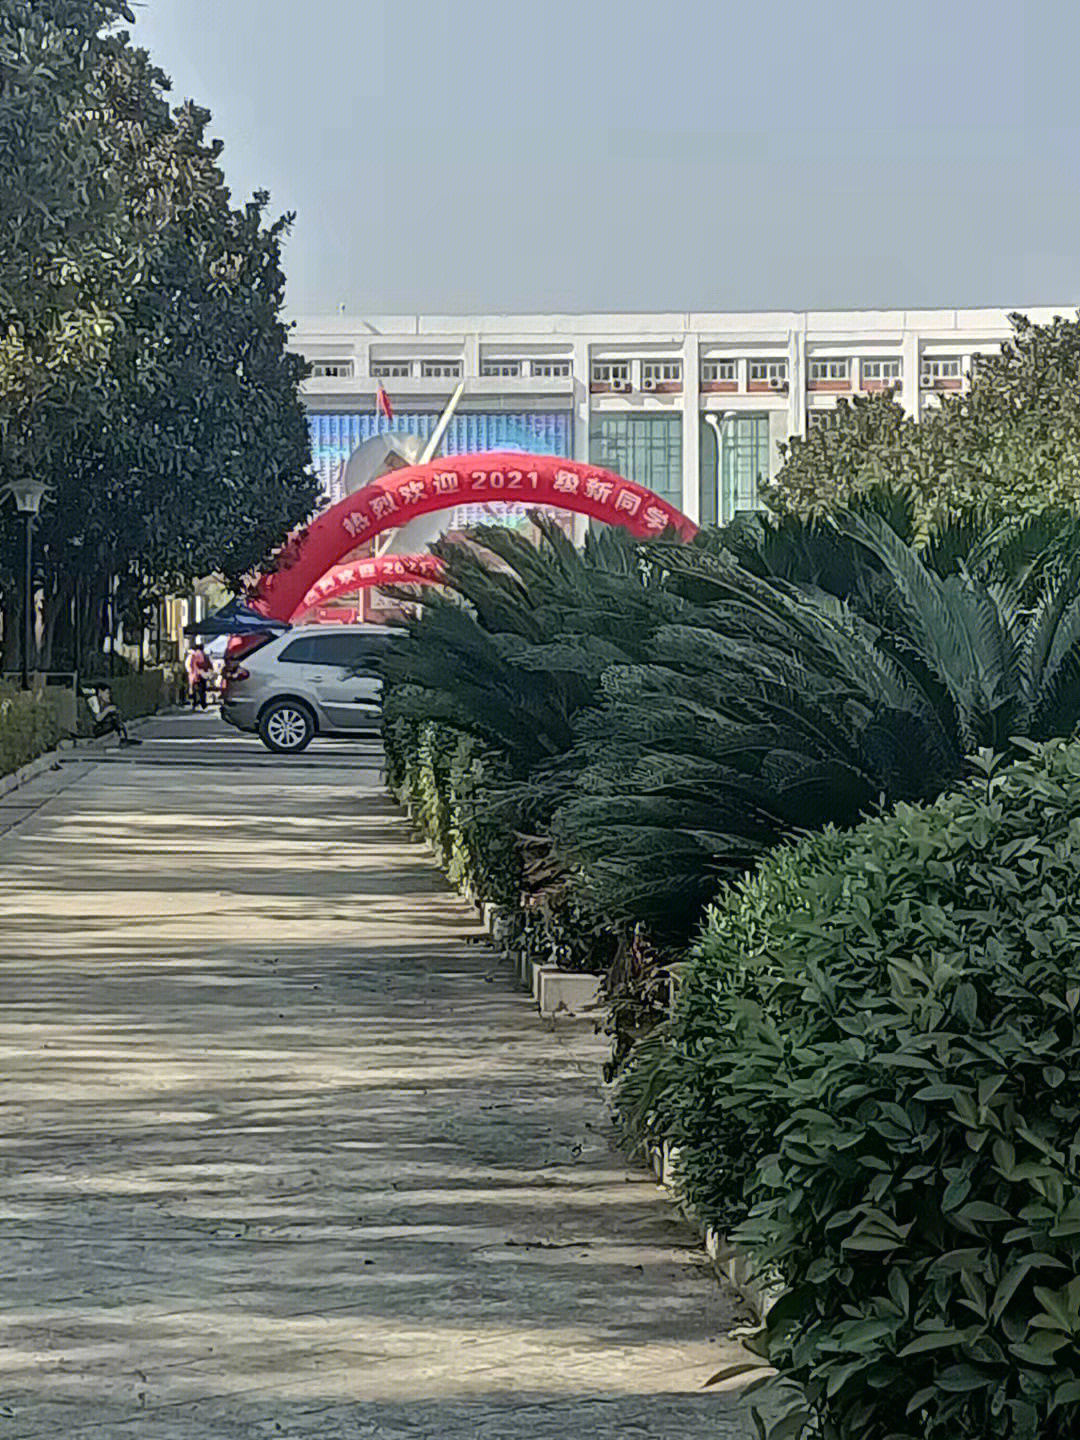 武汉商学院致远广场图片